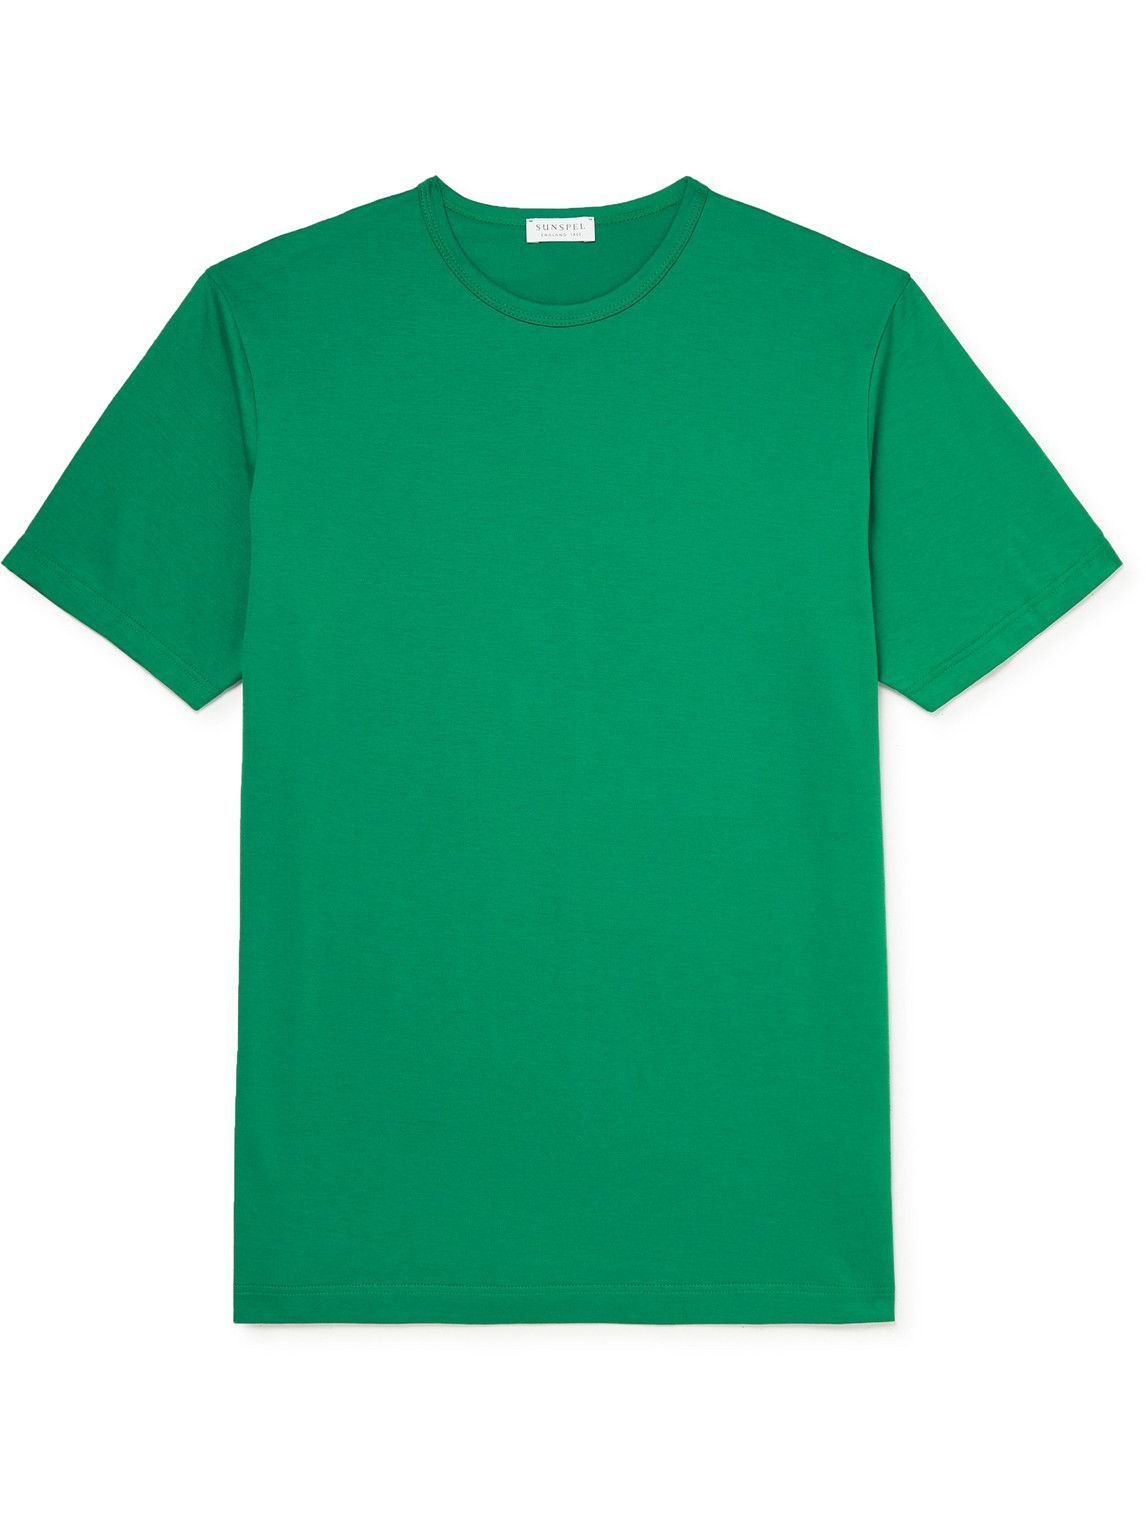 Sunspel - Slim-Fit Cotton-Jersey T-Shirt - Green Sunspel